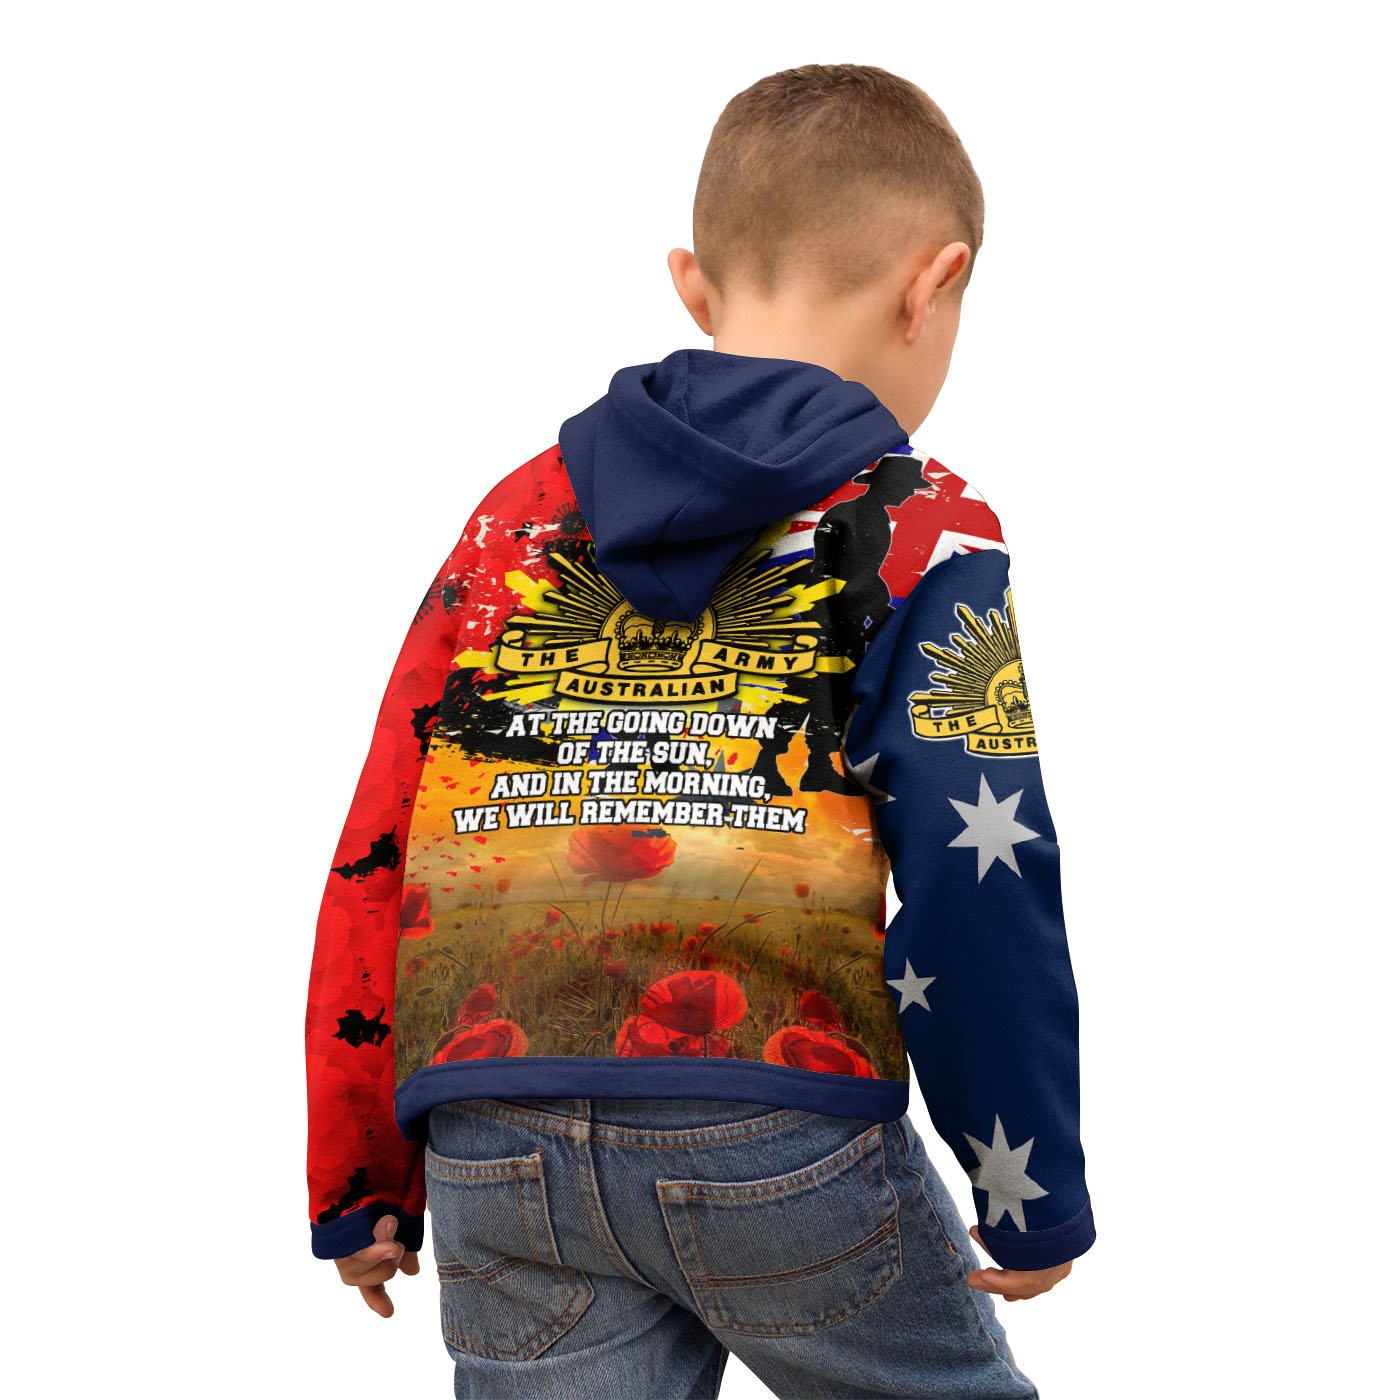 zip-up-hoodie-kids-anzac-day-2021-world-war-ii-commemoration-1939-1945